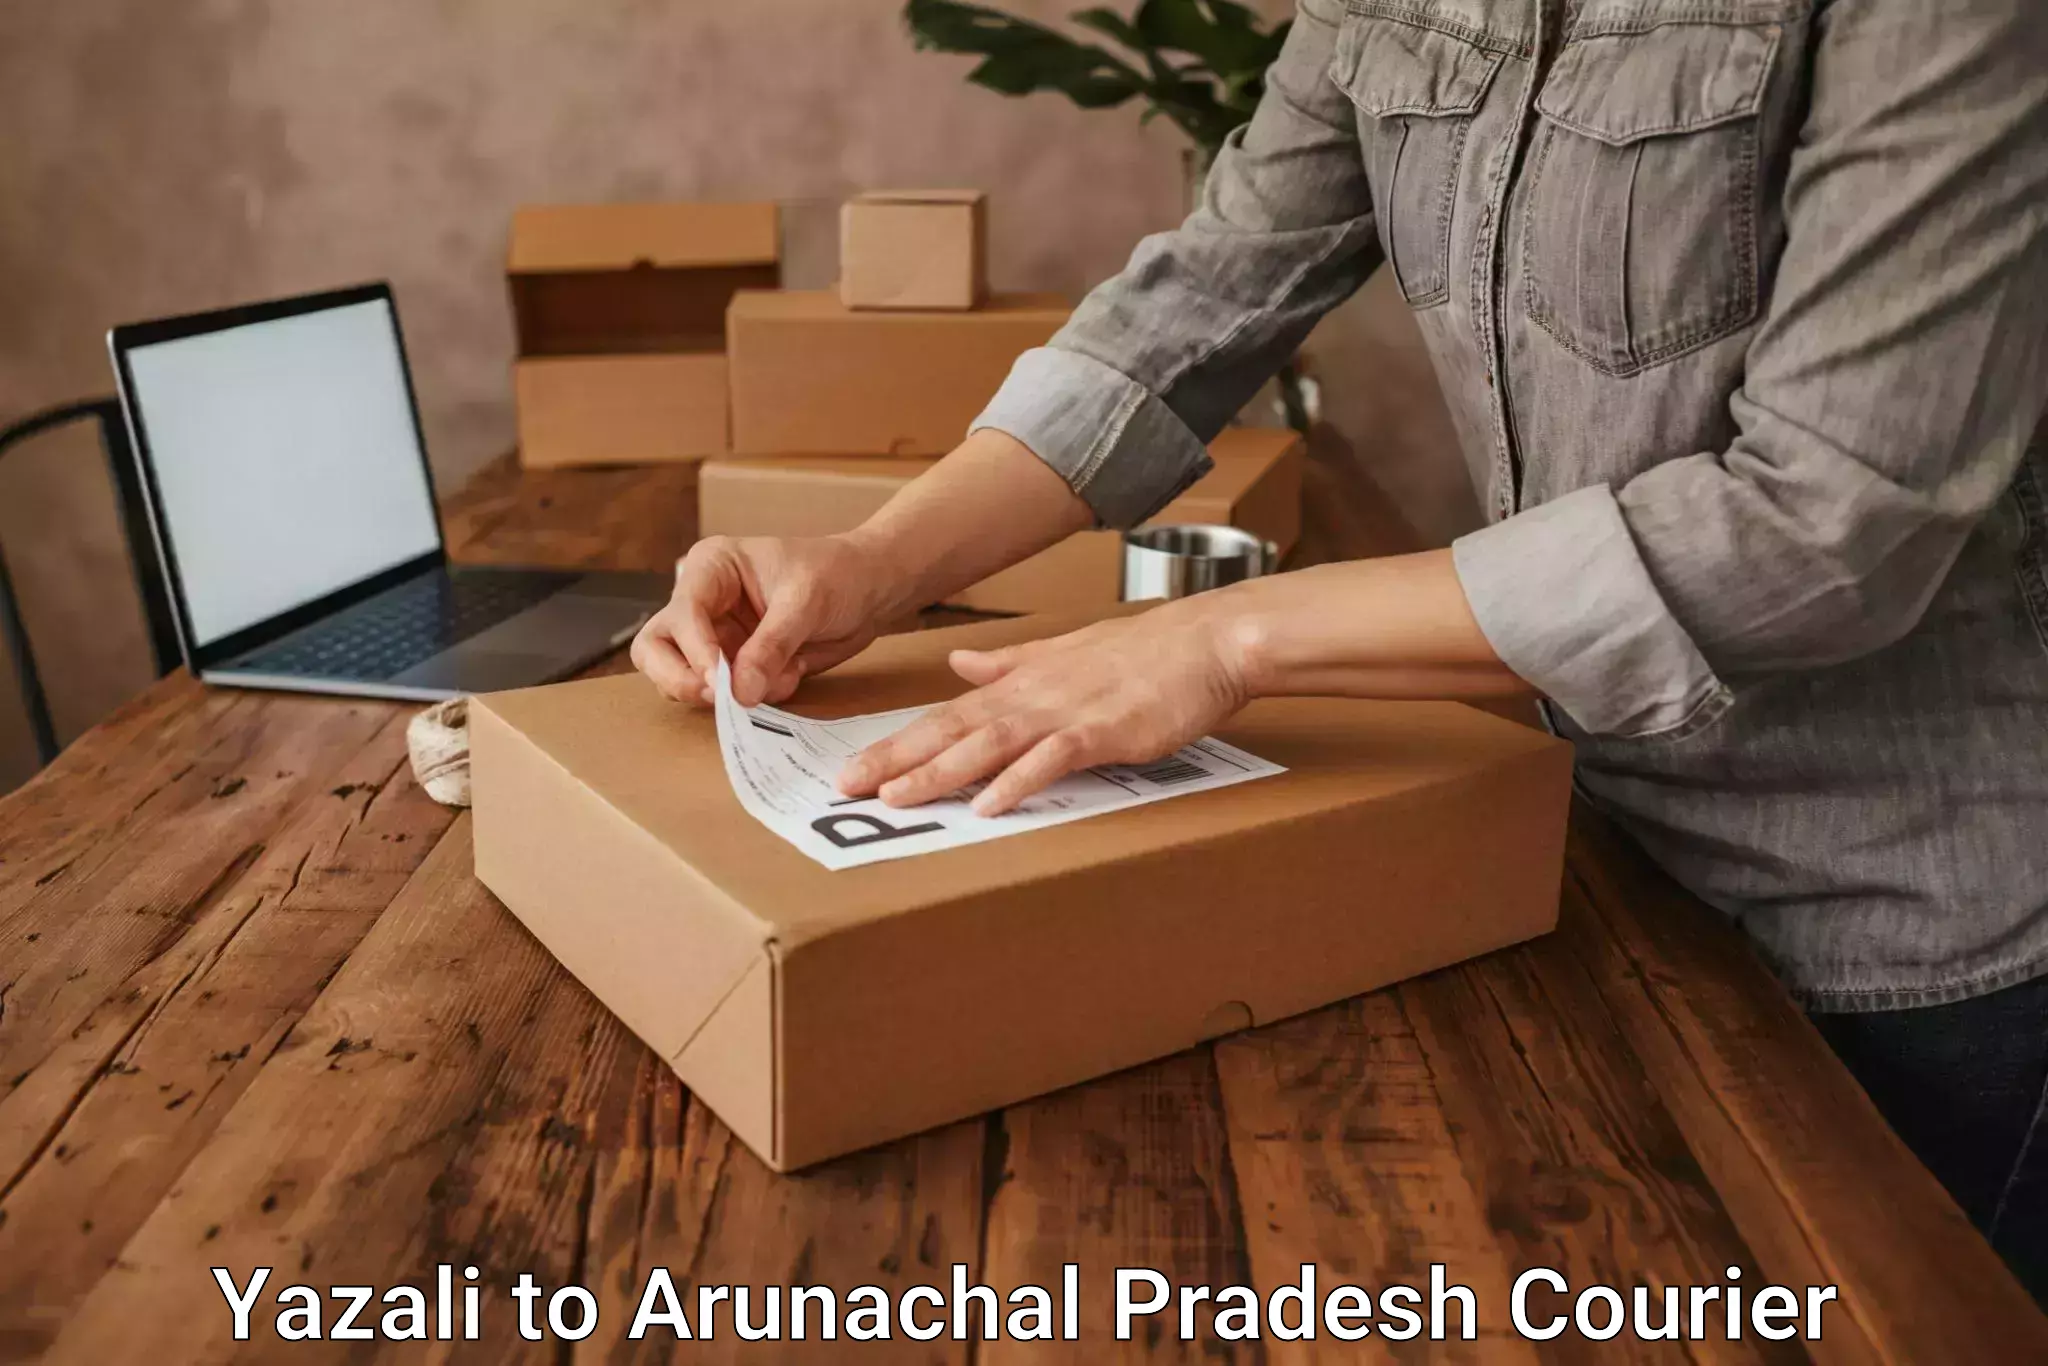 Courier service comparison Yazali to Arunachal Pradesh